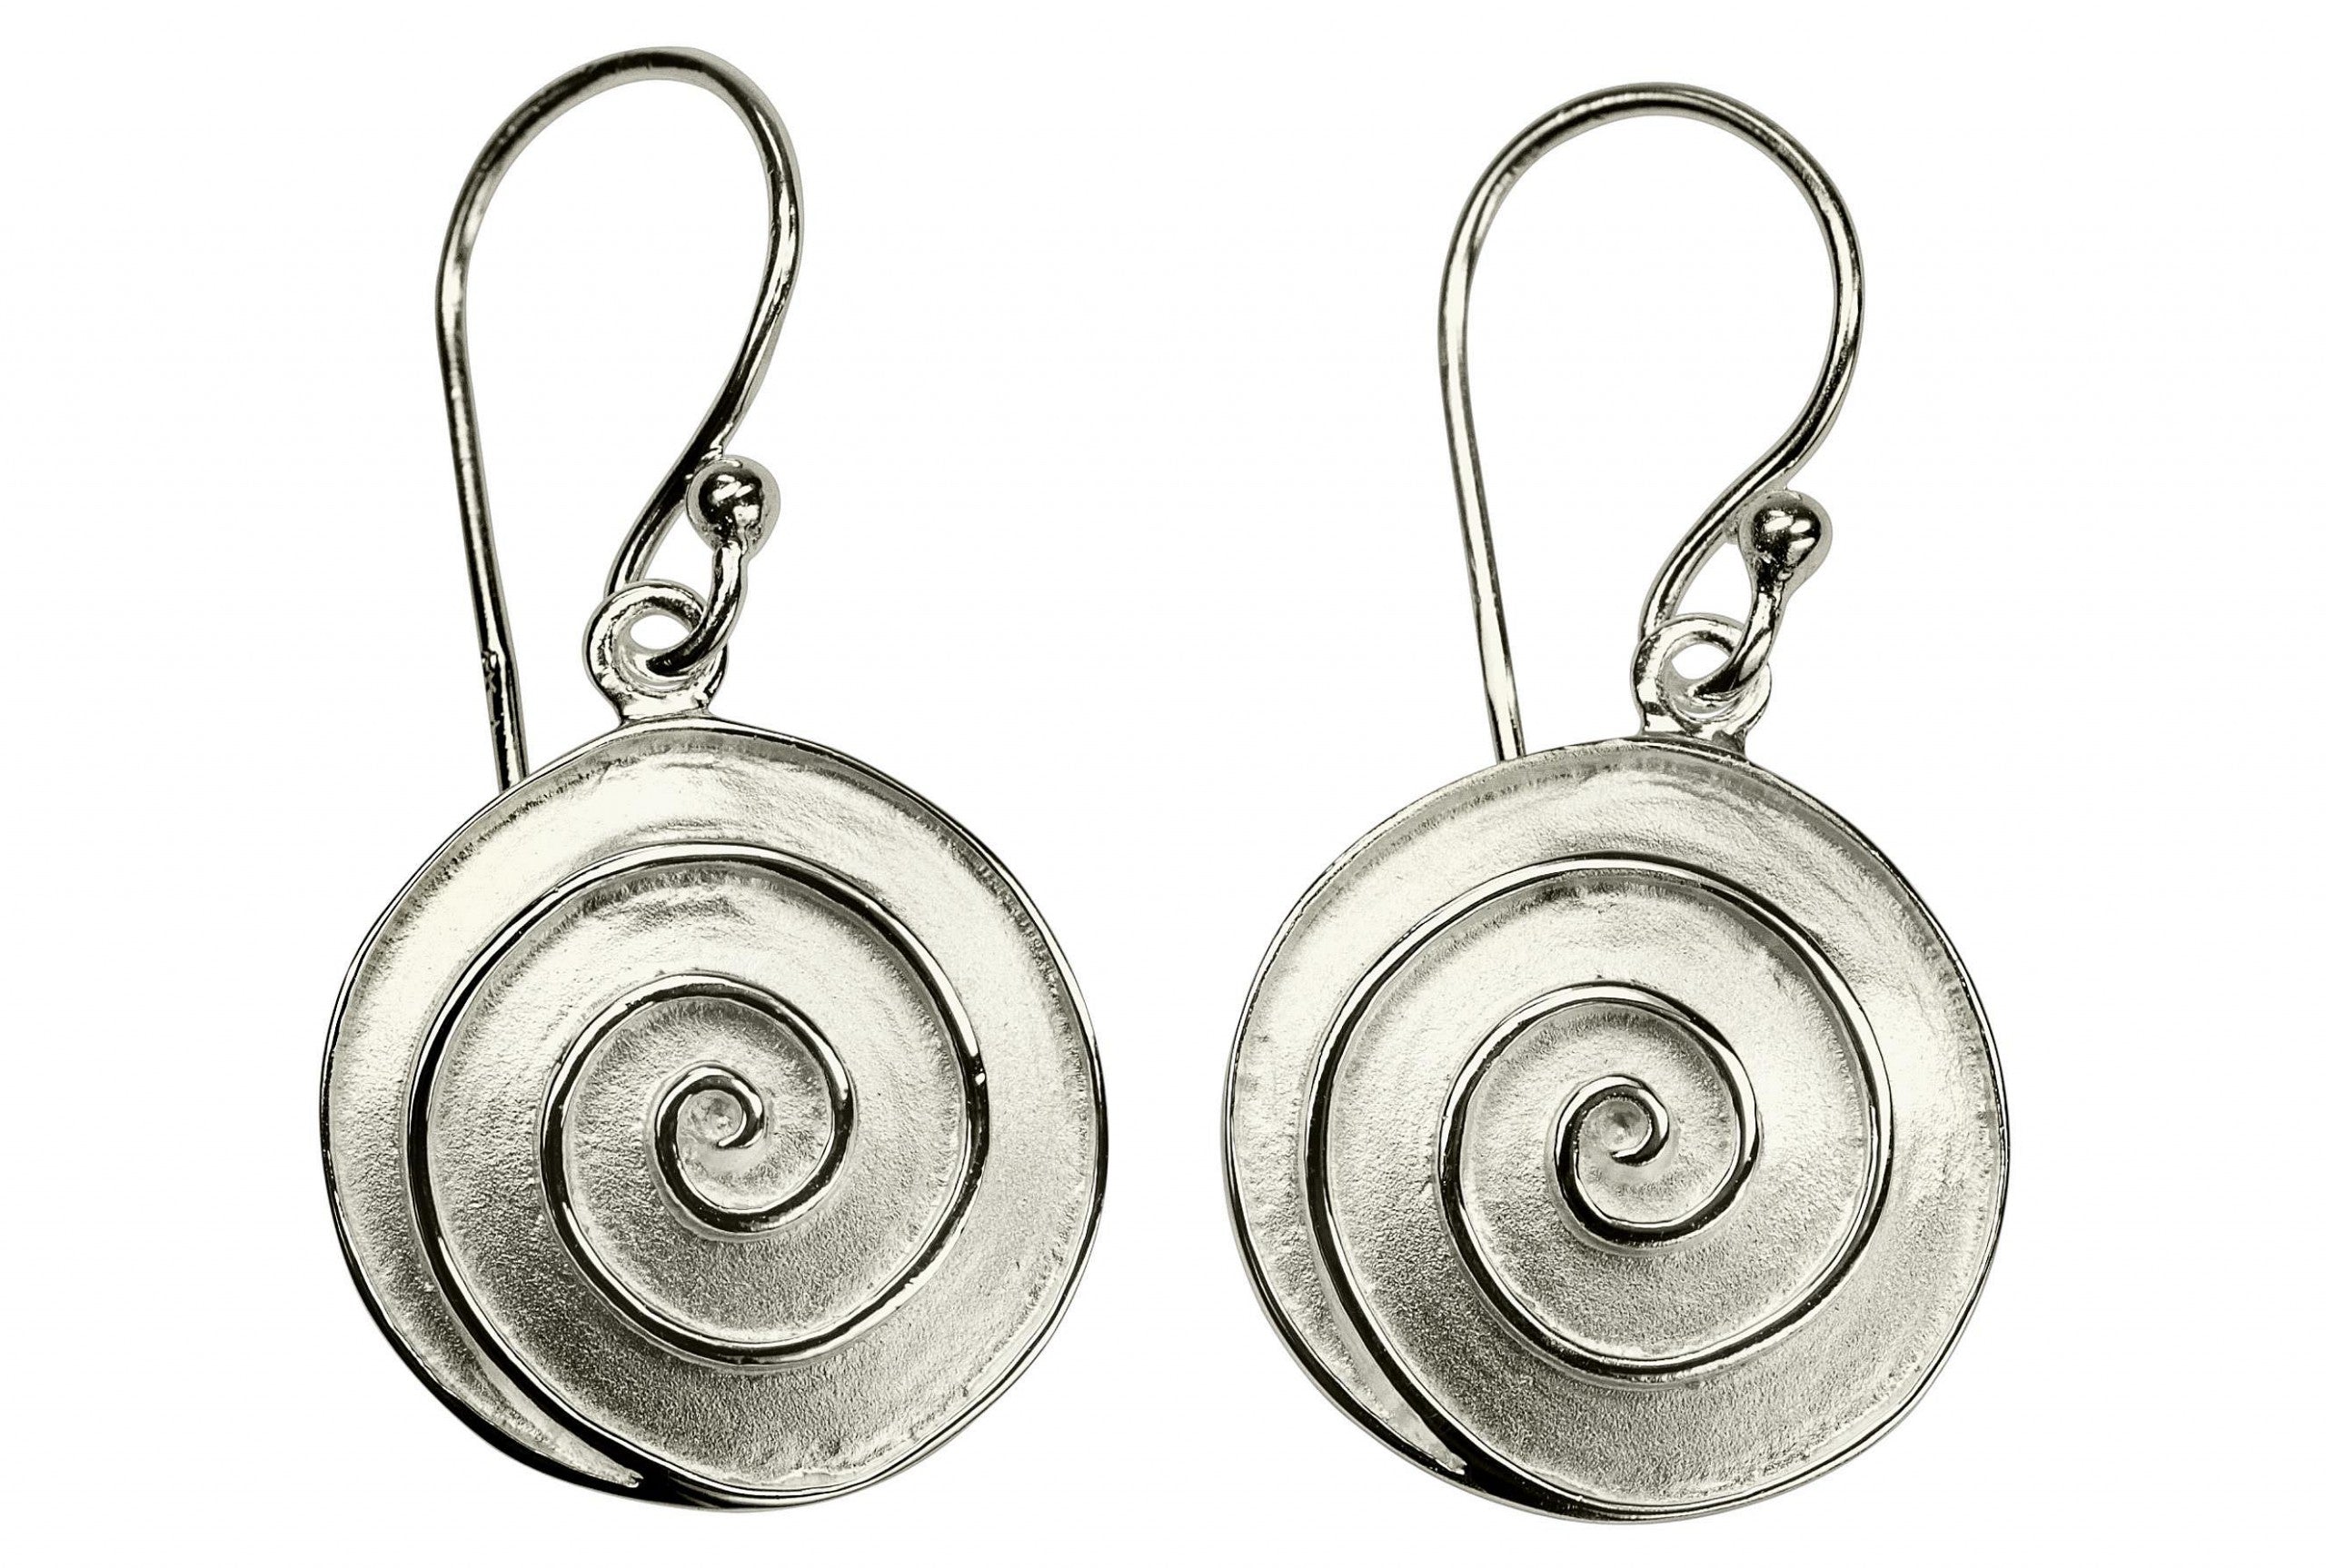 Ohrhänger für Damen aus Silber mit einem Spiralmuster, deren Oberfläche einen mattiert-glänzenden Kontrast bildet.